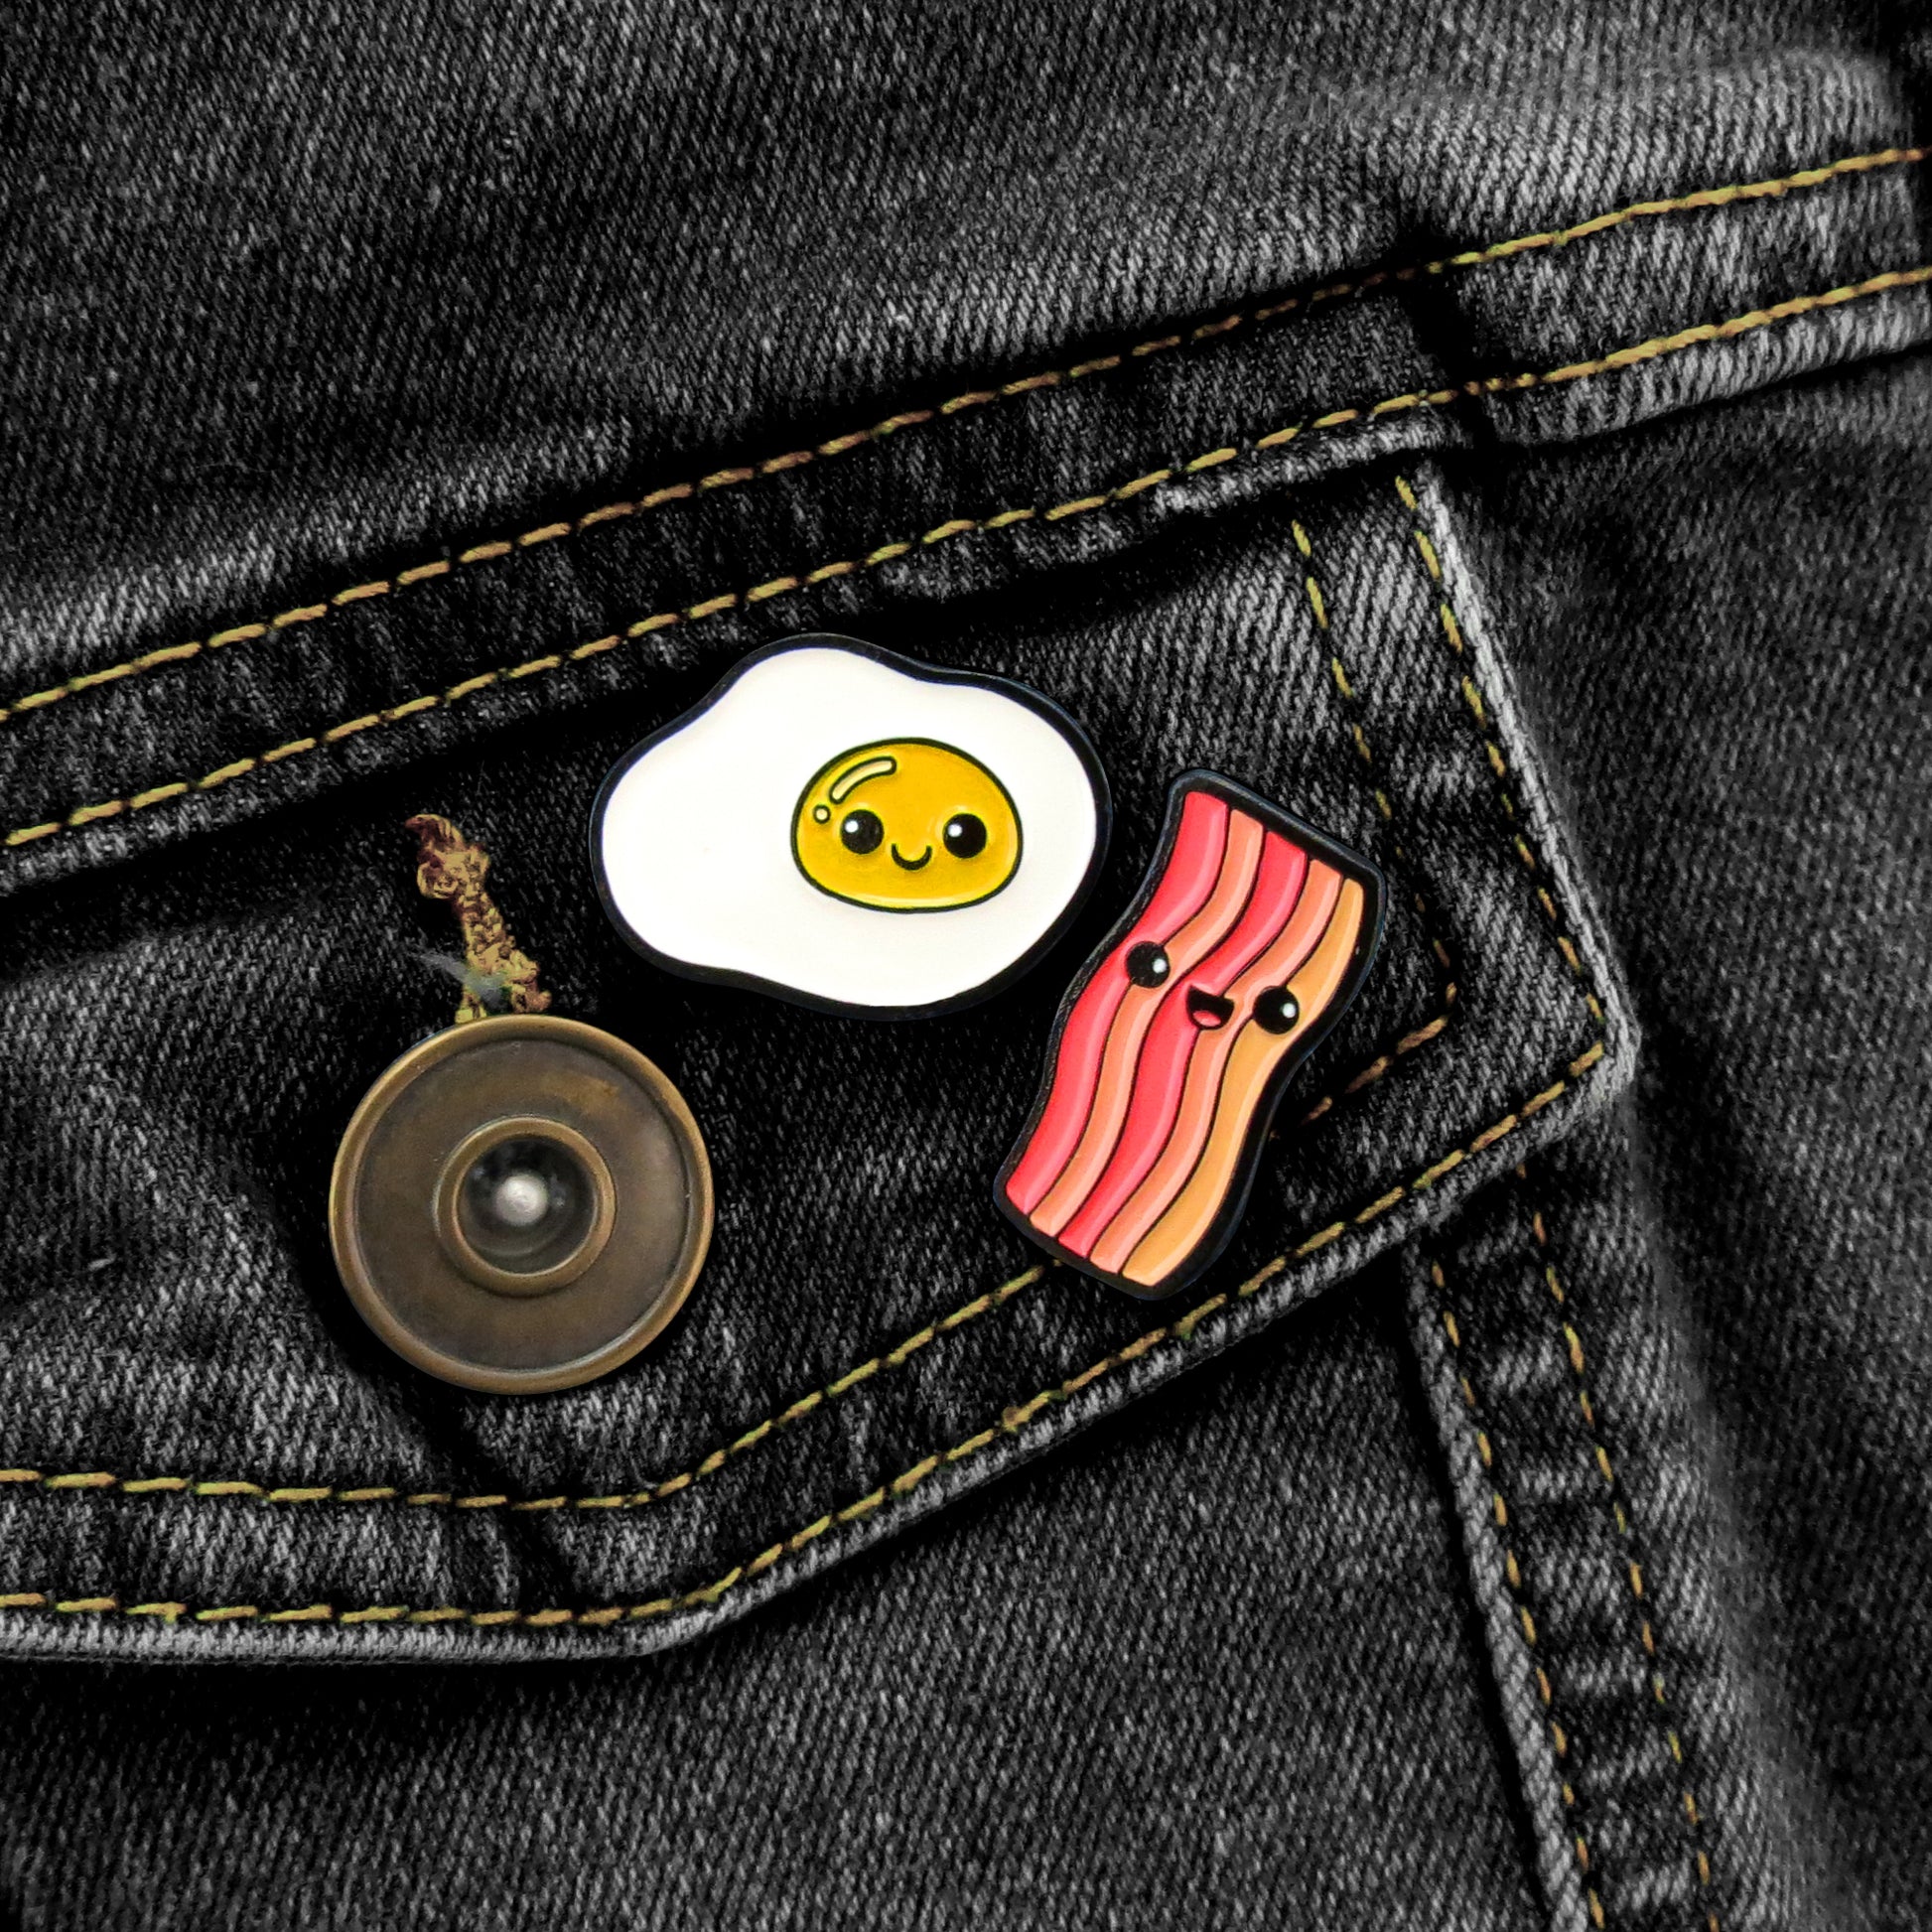 Pin Pin Pals Egg and Bacon enamel pin set on black jean jacket pocket